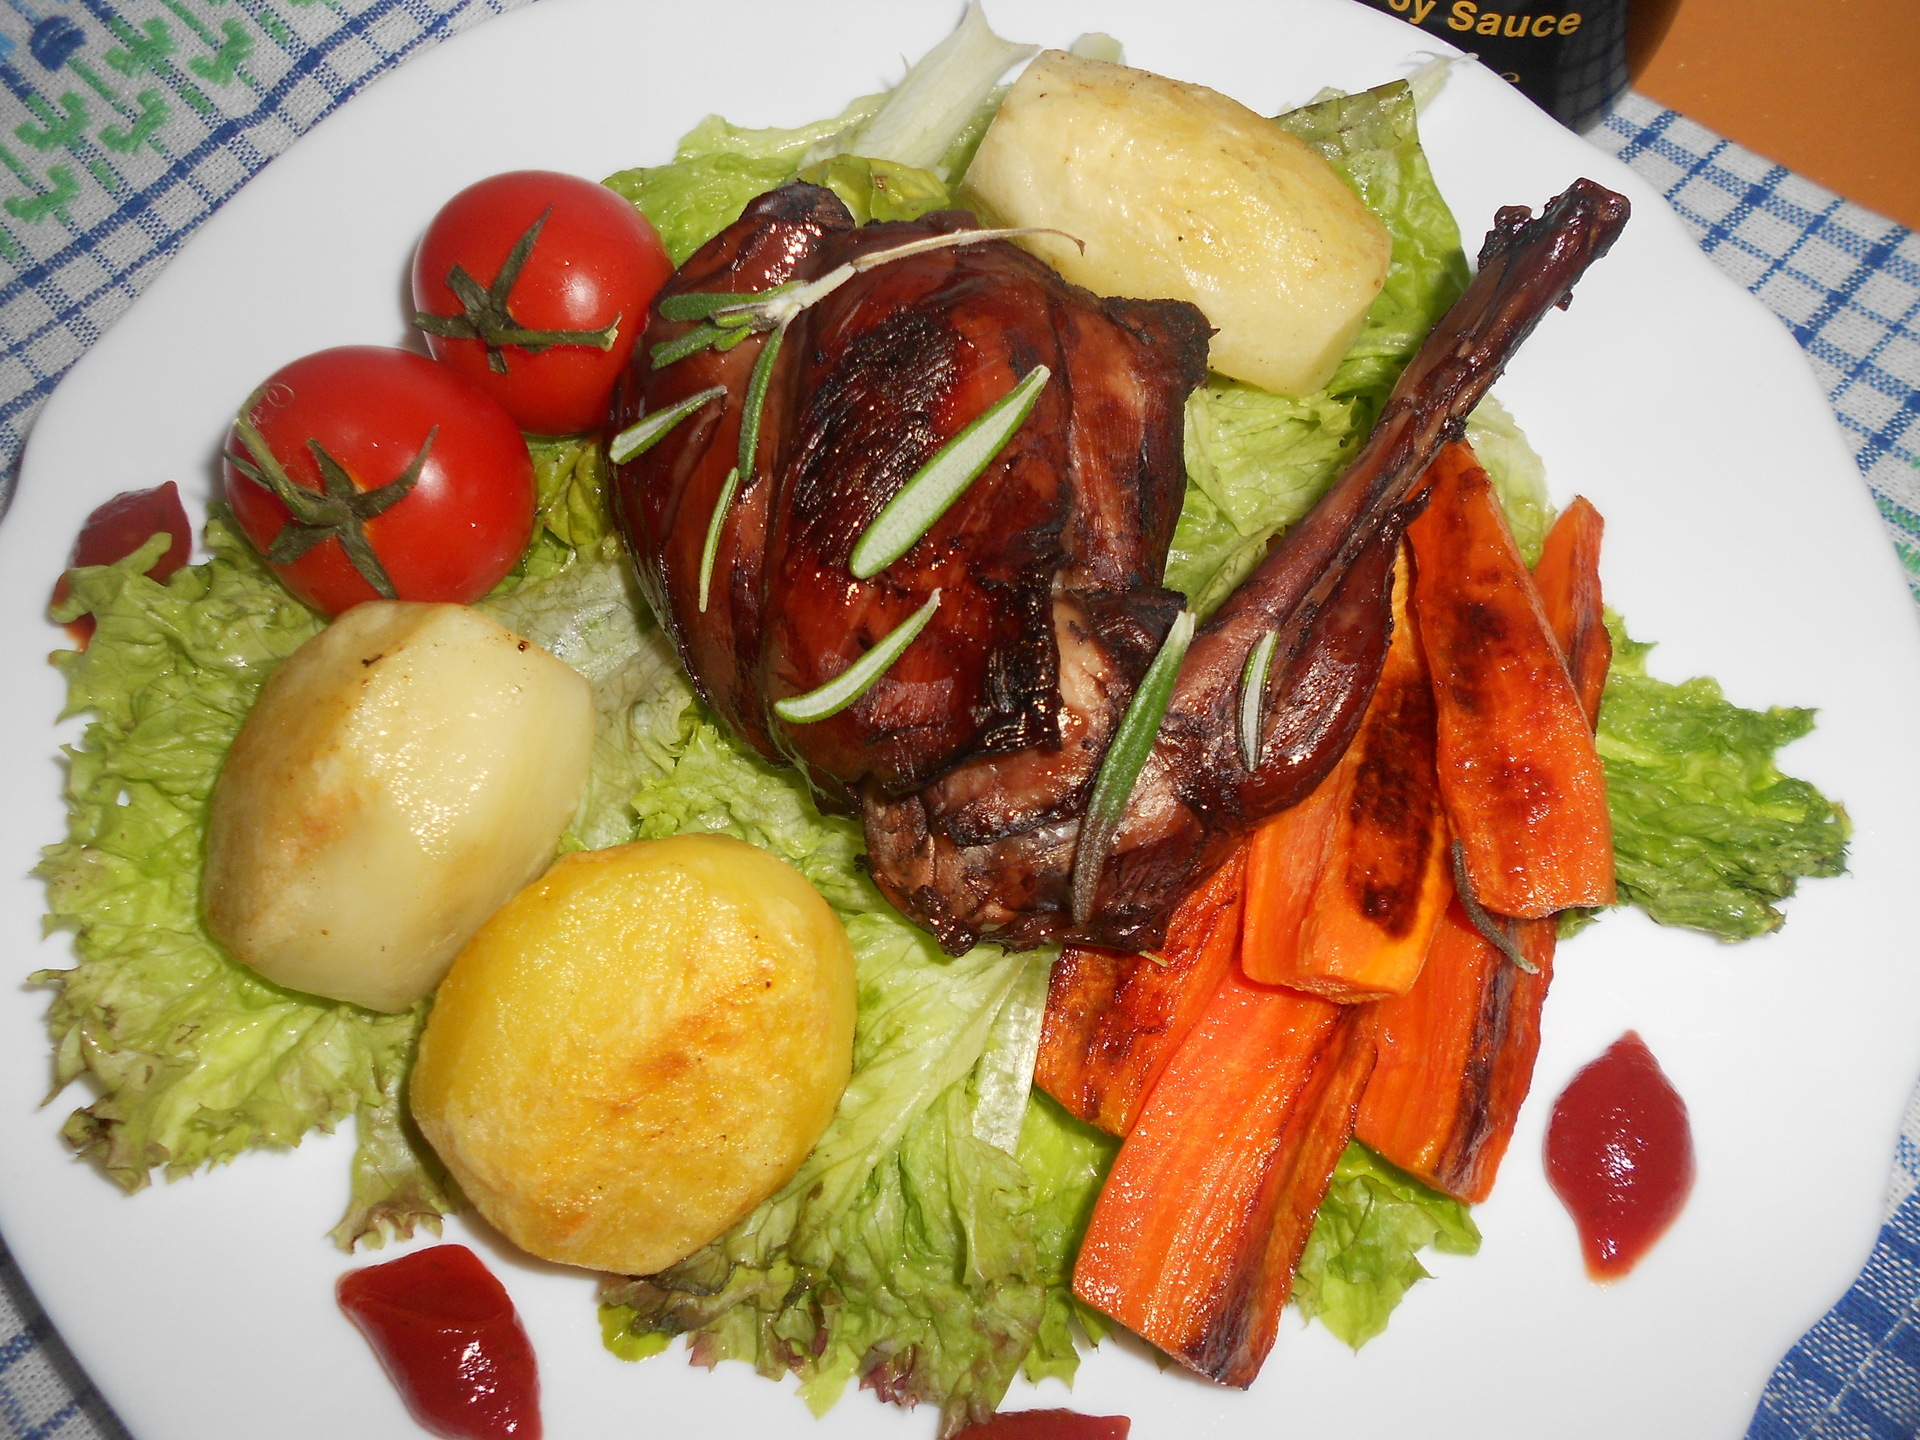 Фото к рецепту: Кролик с пряными травами и овощами